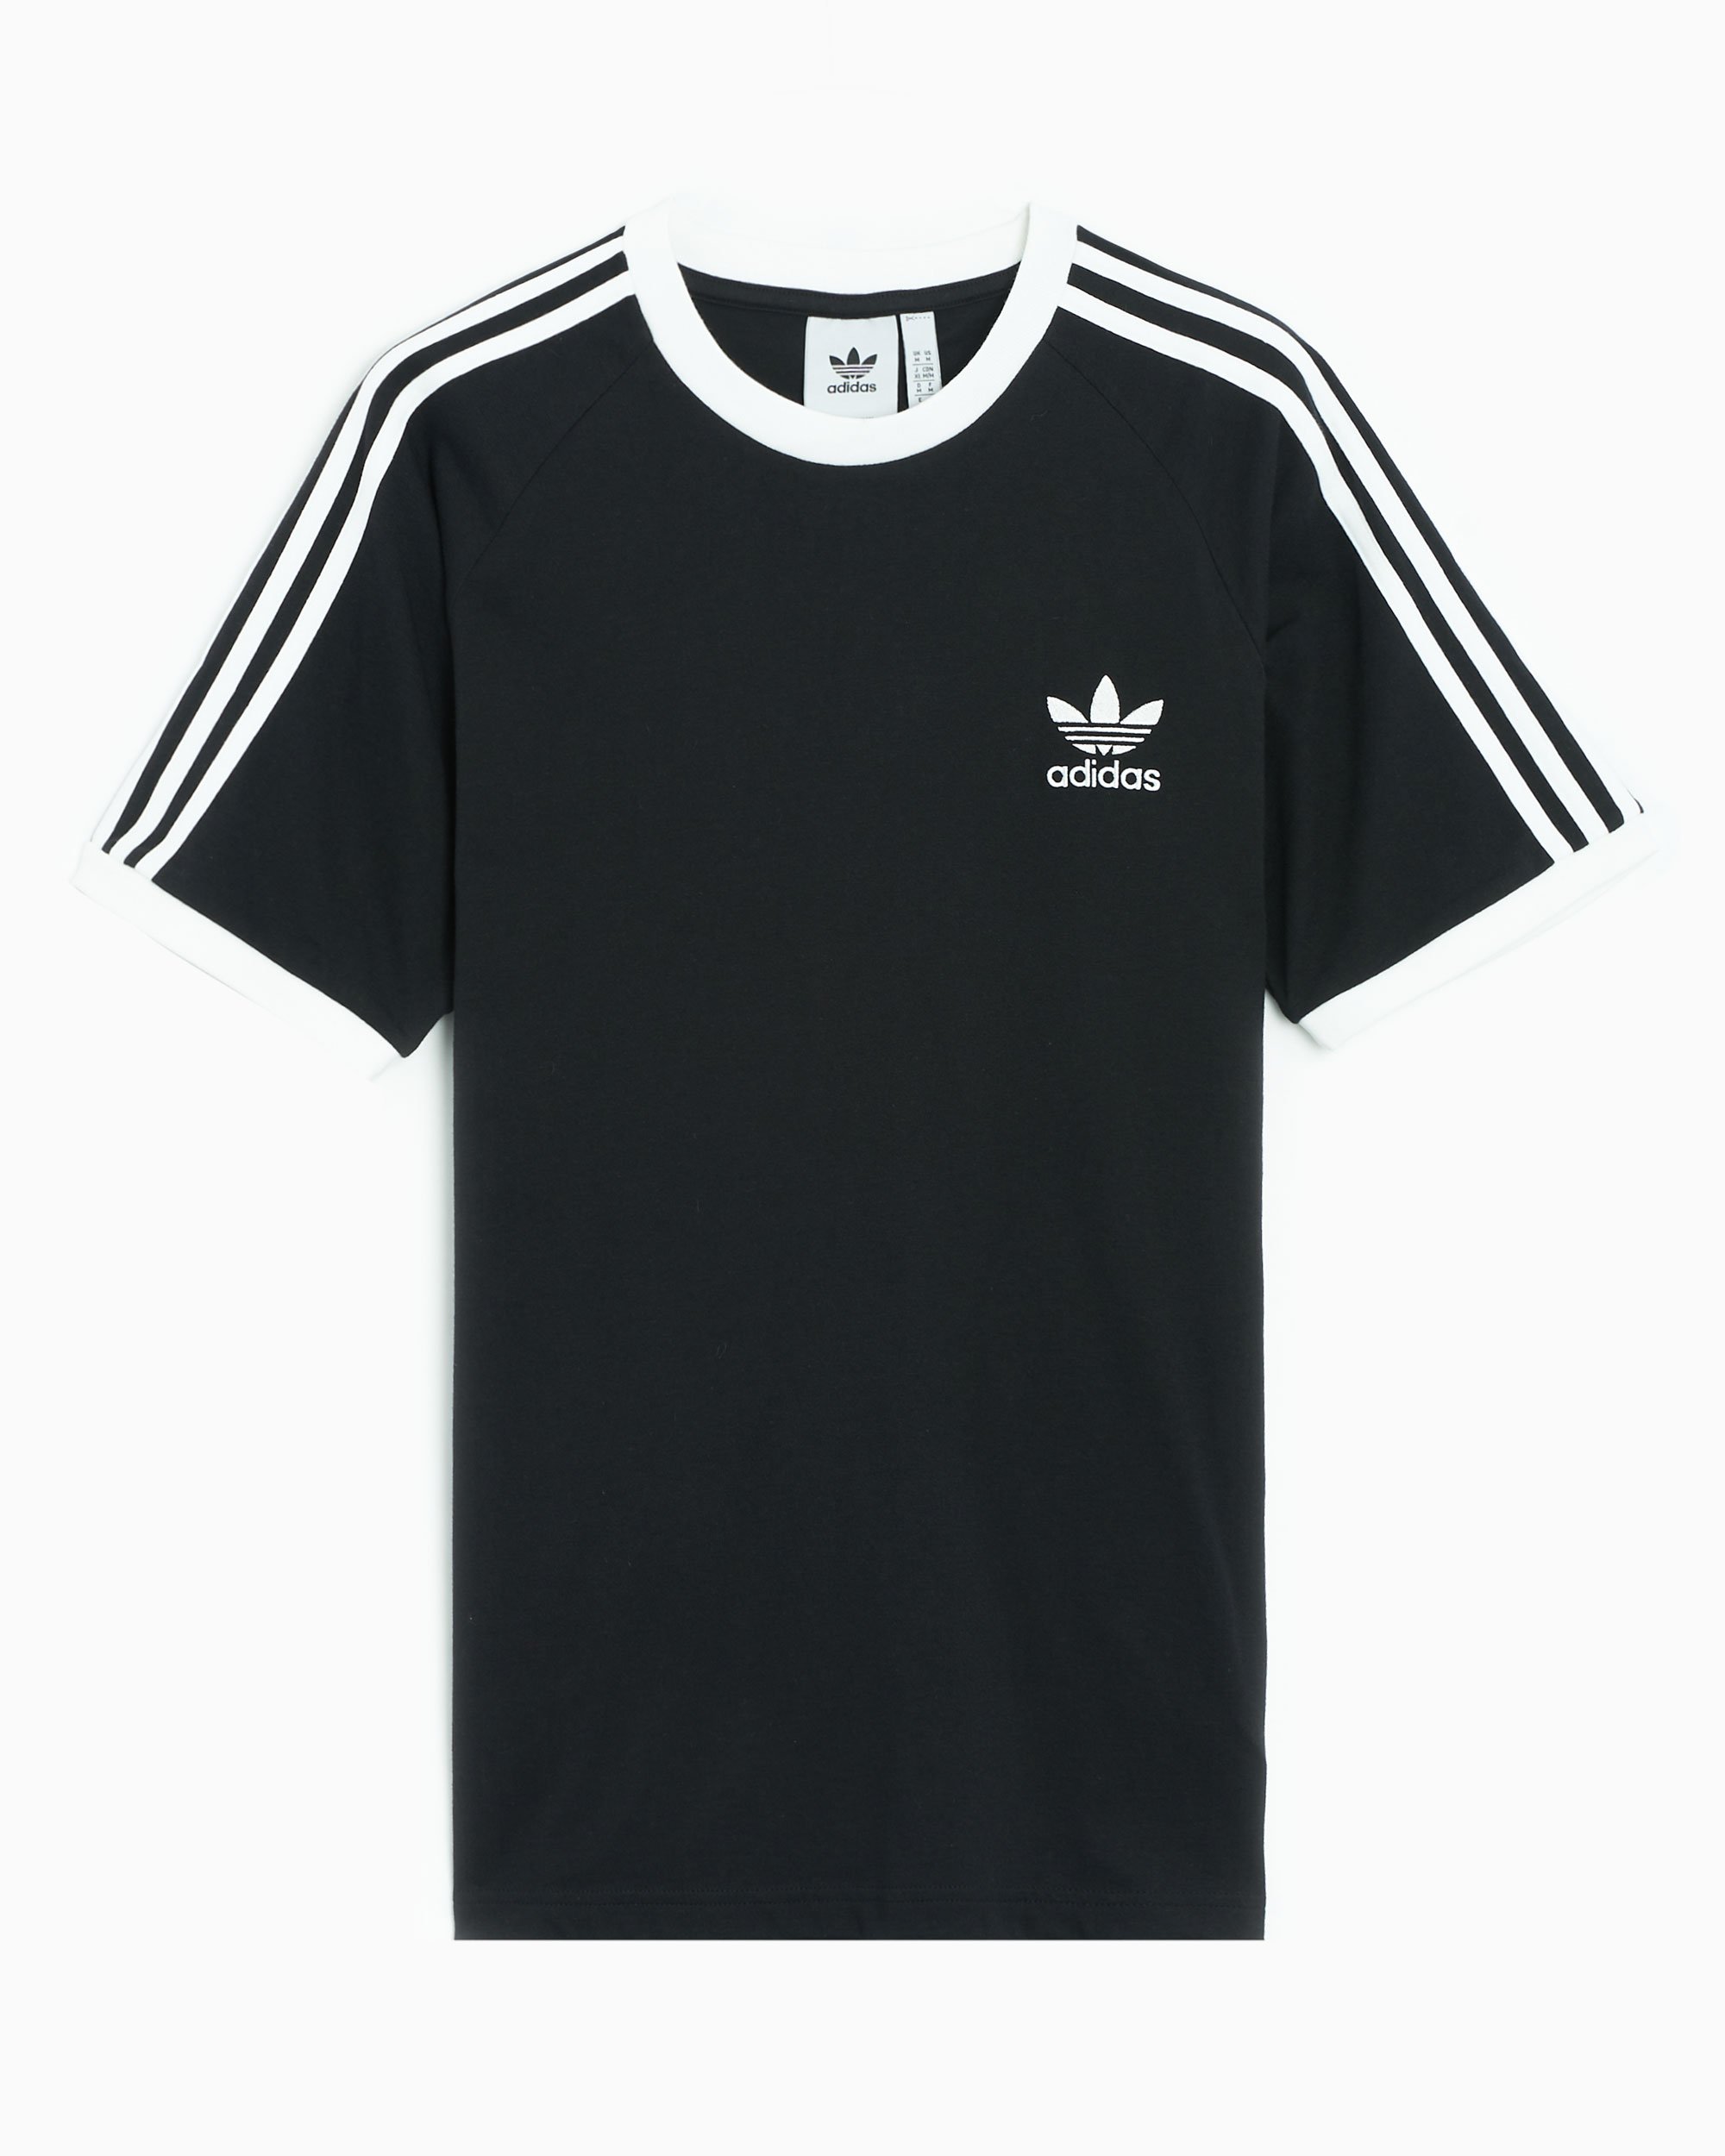 IA4845| adidas at 3 Stripes Men\'s Online Originals T-Shirt Black Buy FOOTDISTRICT